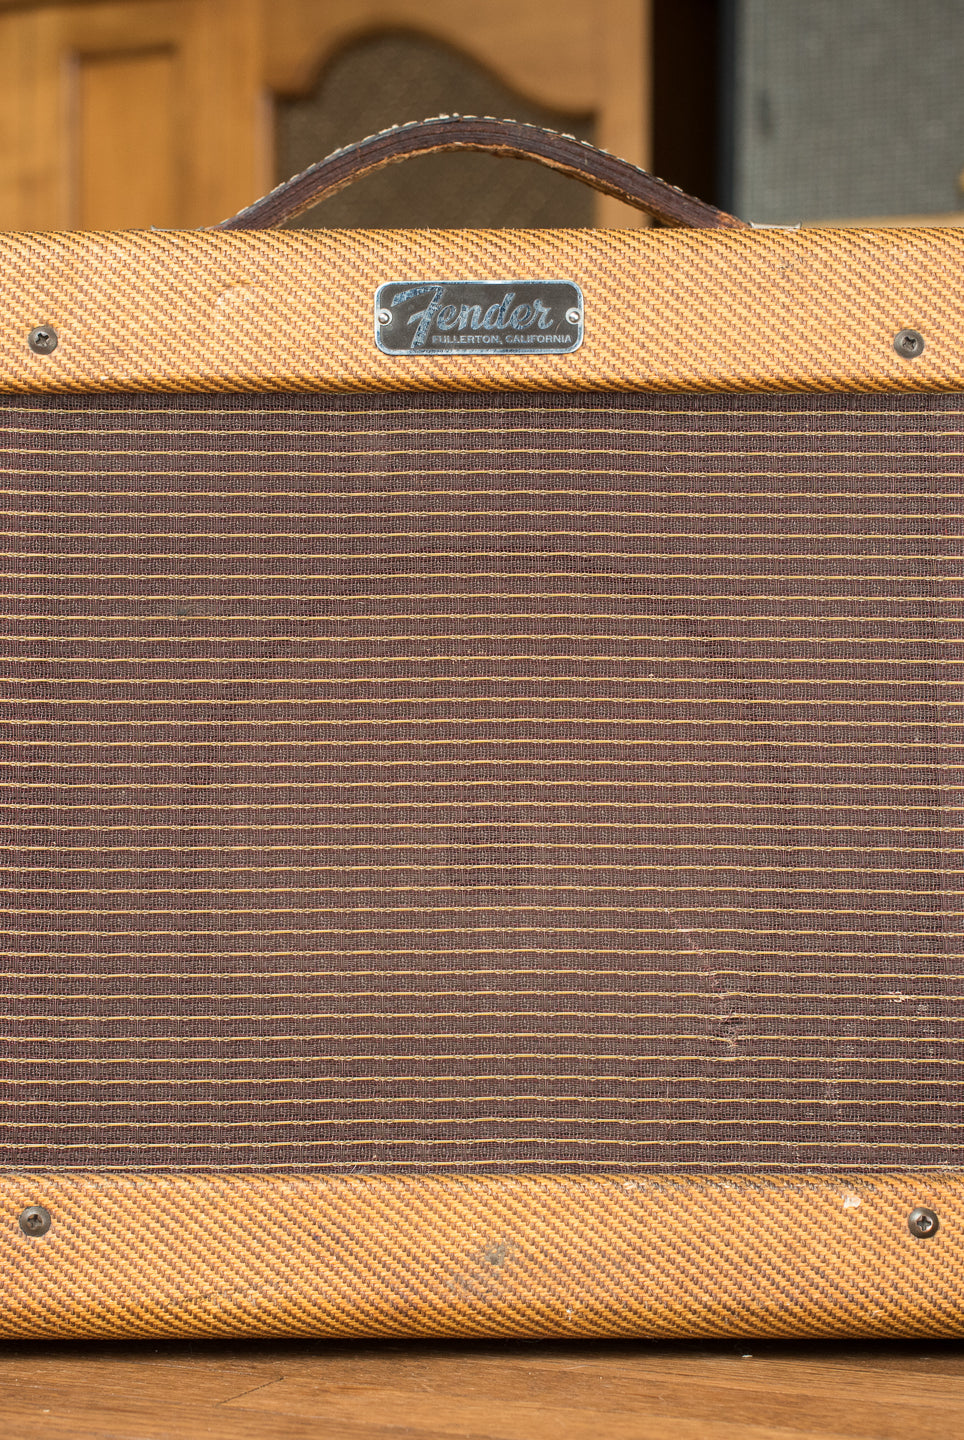 1963 Fender Champ guitar amp